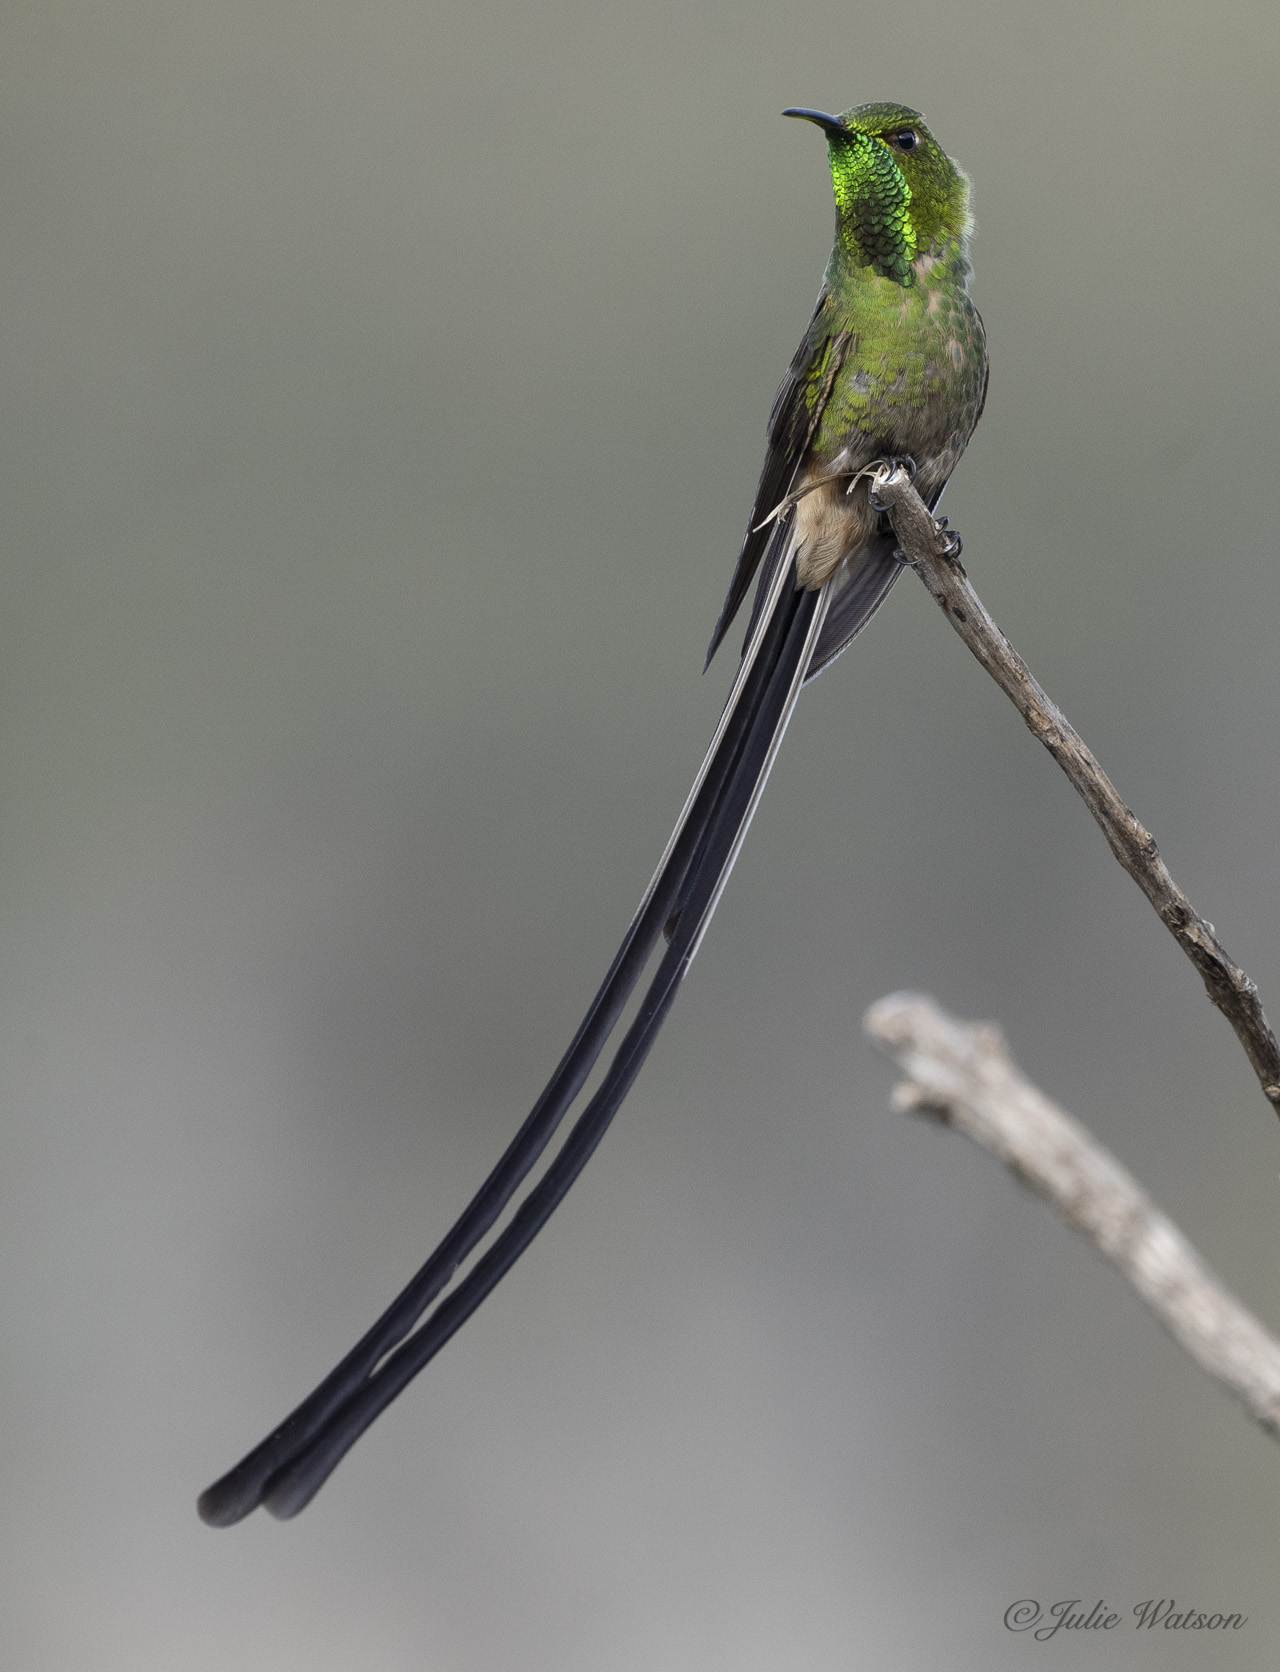 Uno de los colibríes de Ecuador es el ‘Black Trainbearer’ que mostra su garganta verde iridiscente.